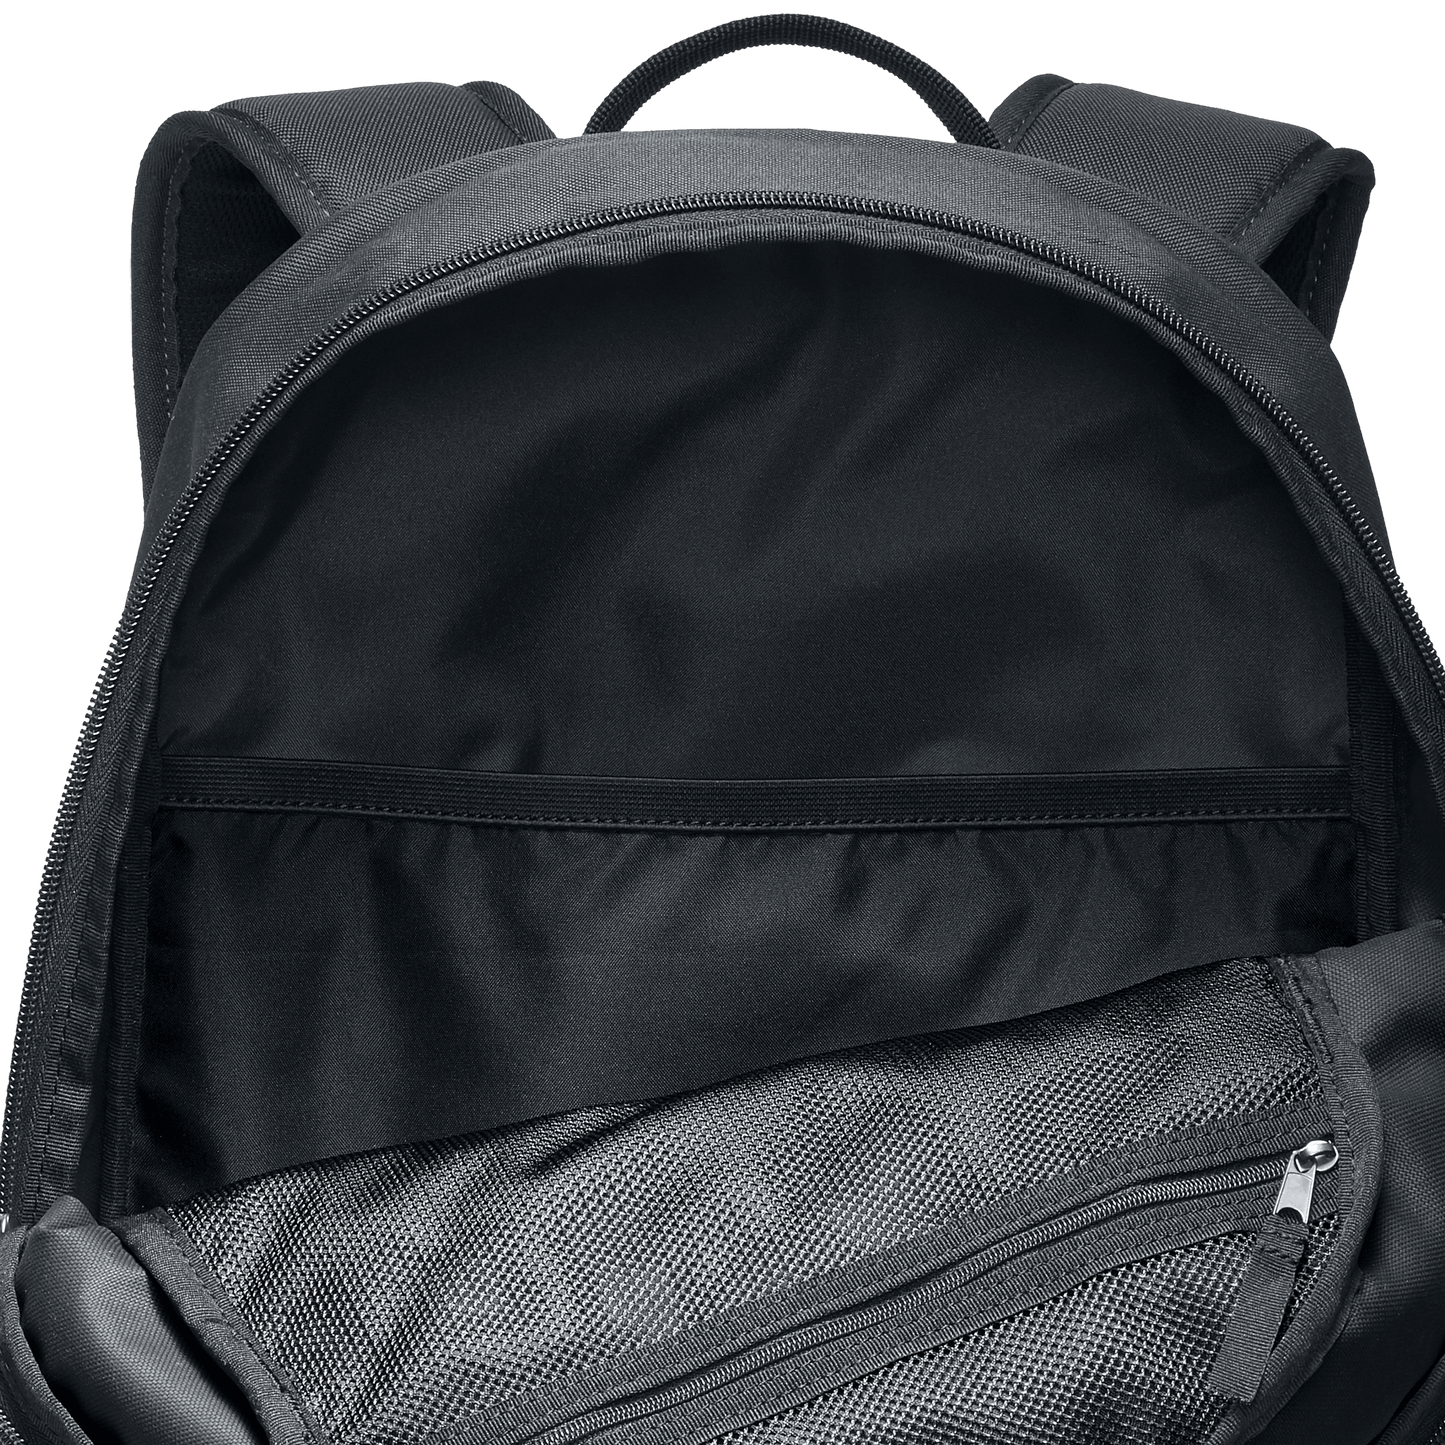 Nike SB Courthouse backpack black white